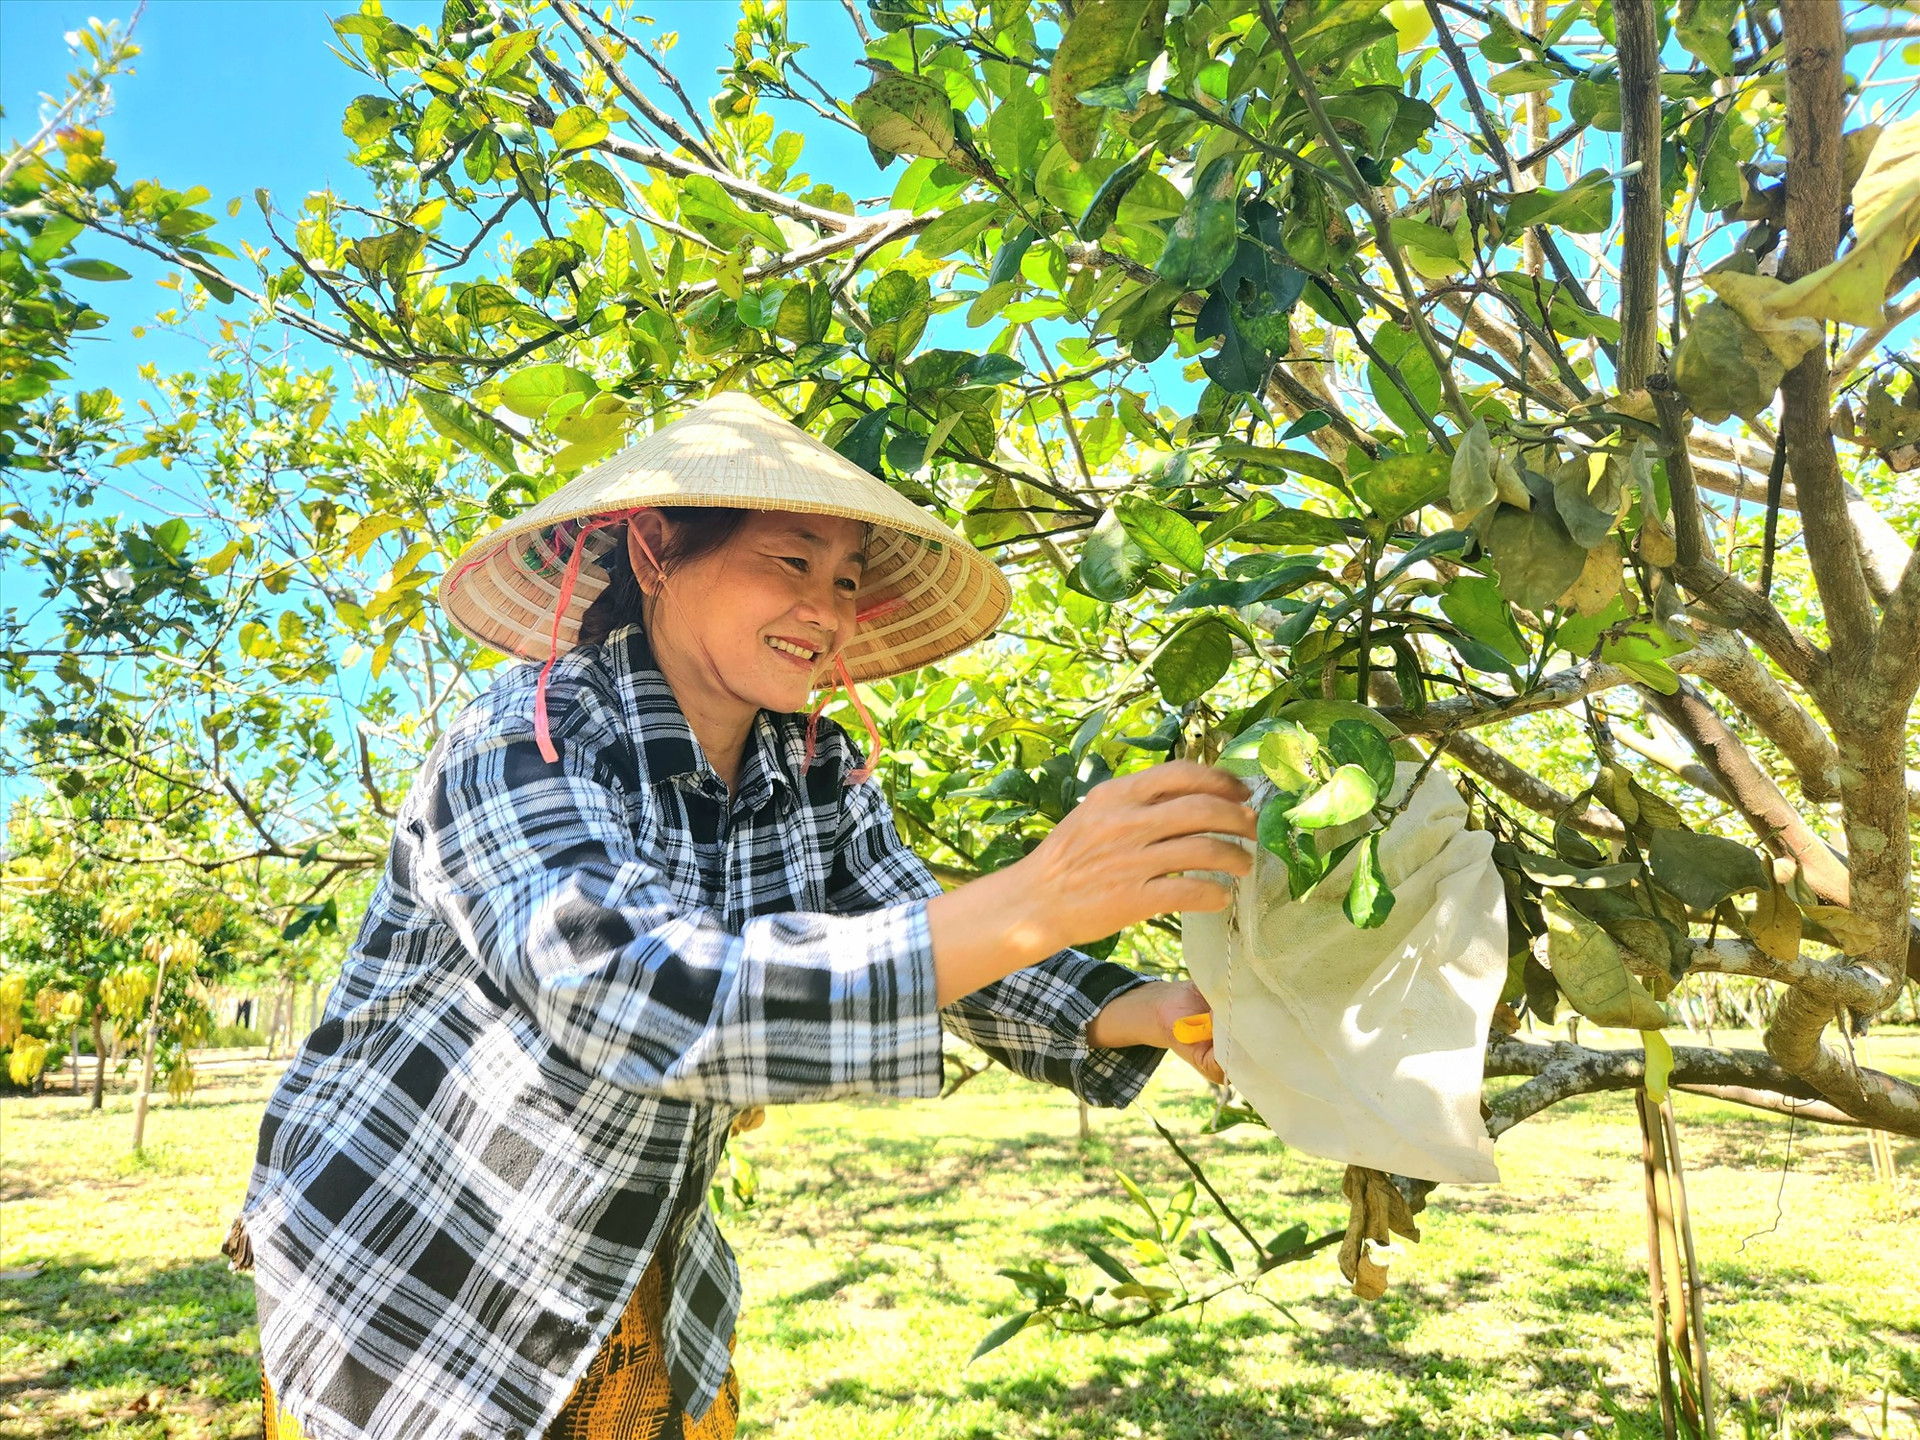 Làng Cà Ban hiện có nhiều vườn cây ăn trái đang mùa trĩu quả.